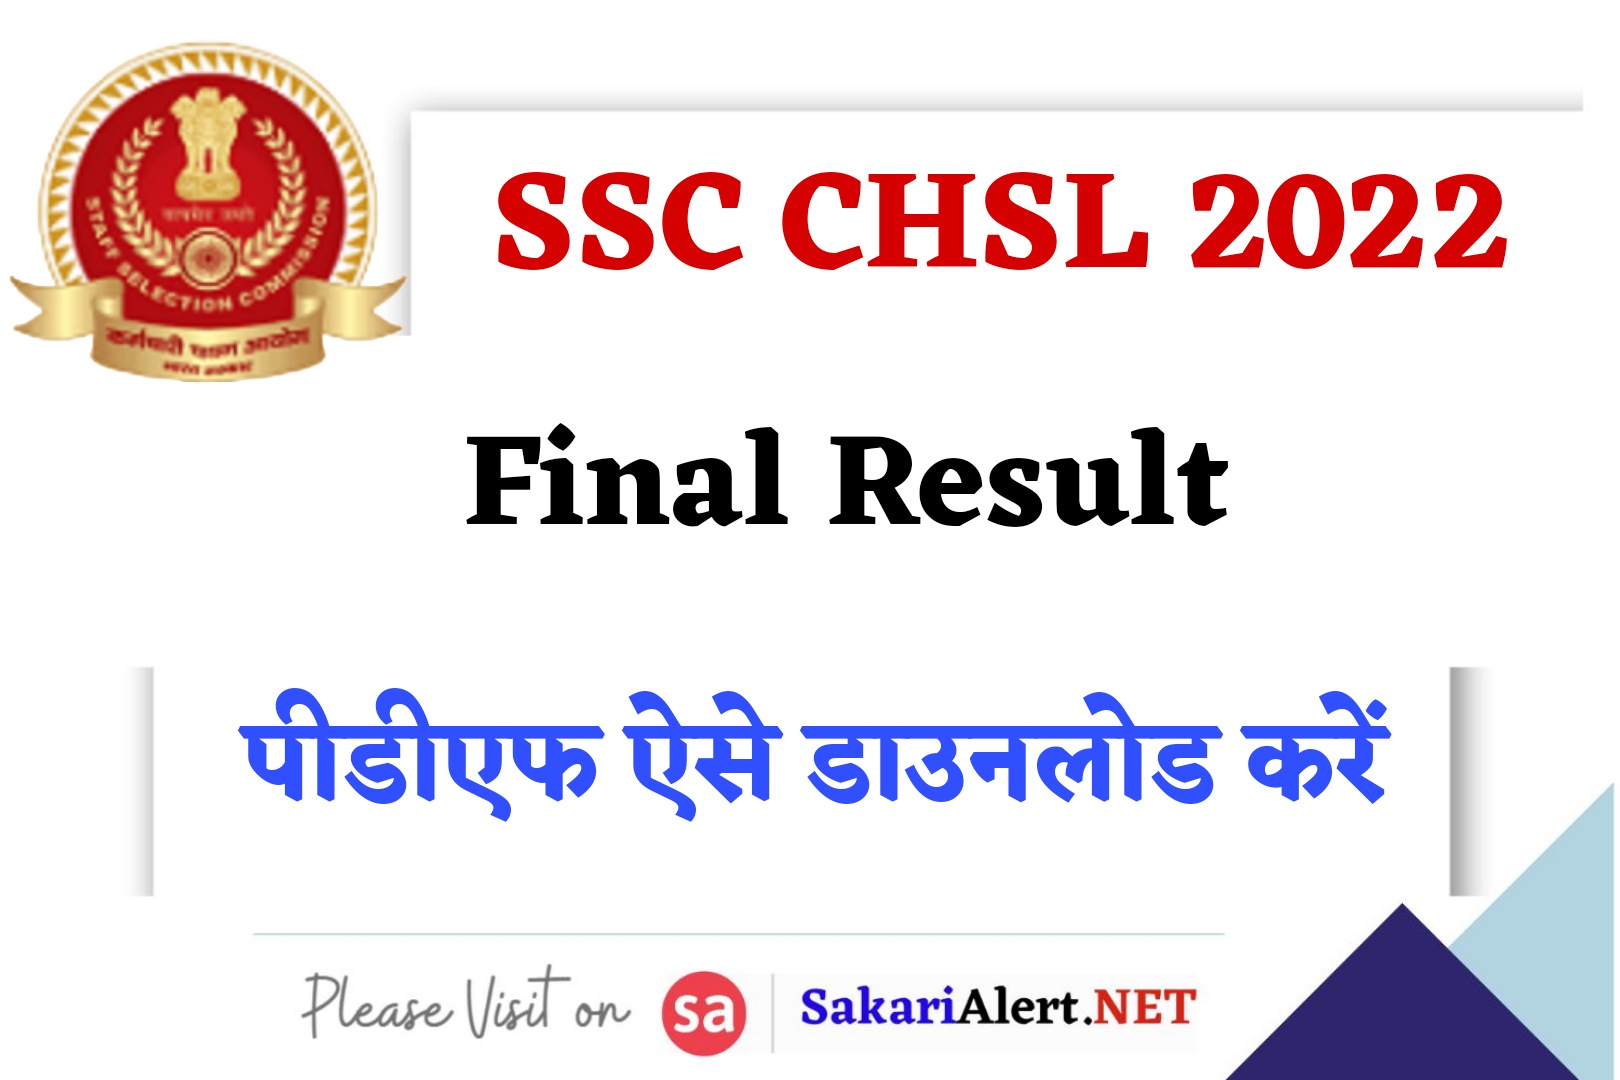 SSC CHSL 2022 Final Result